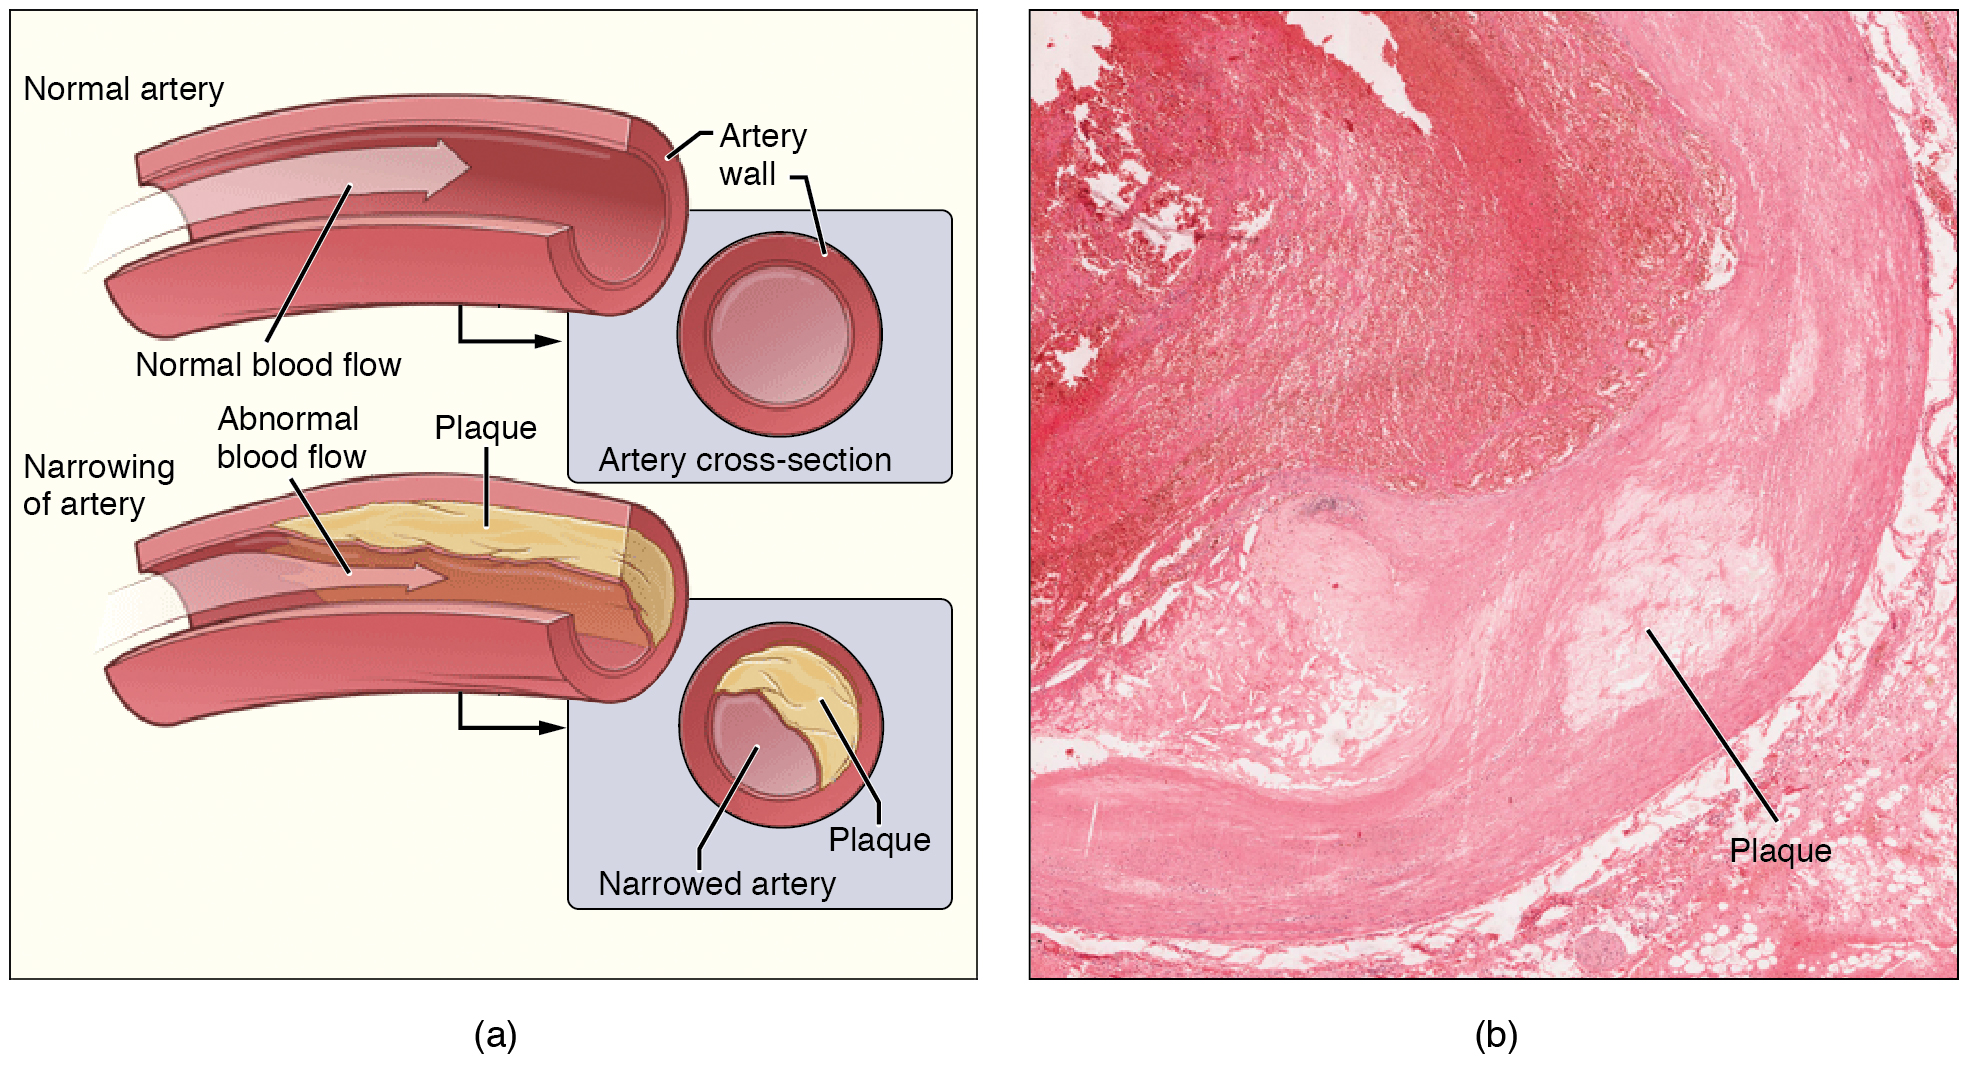 O painel esquerdo mostra a seção transversal de uma artéria normal e uma estreita. O painel direito mostra uma micrografia de uma artéria com placa.